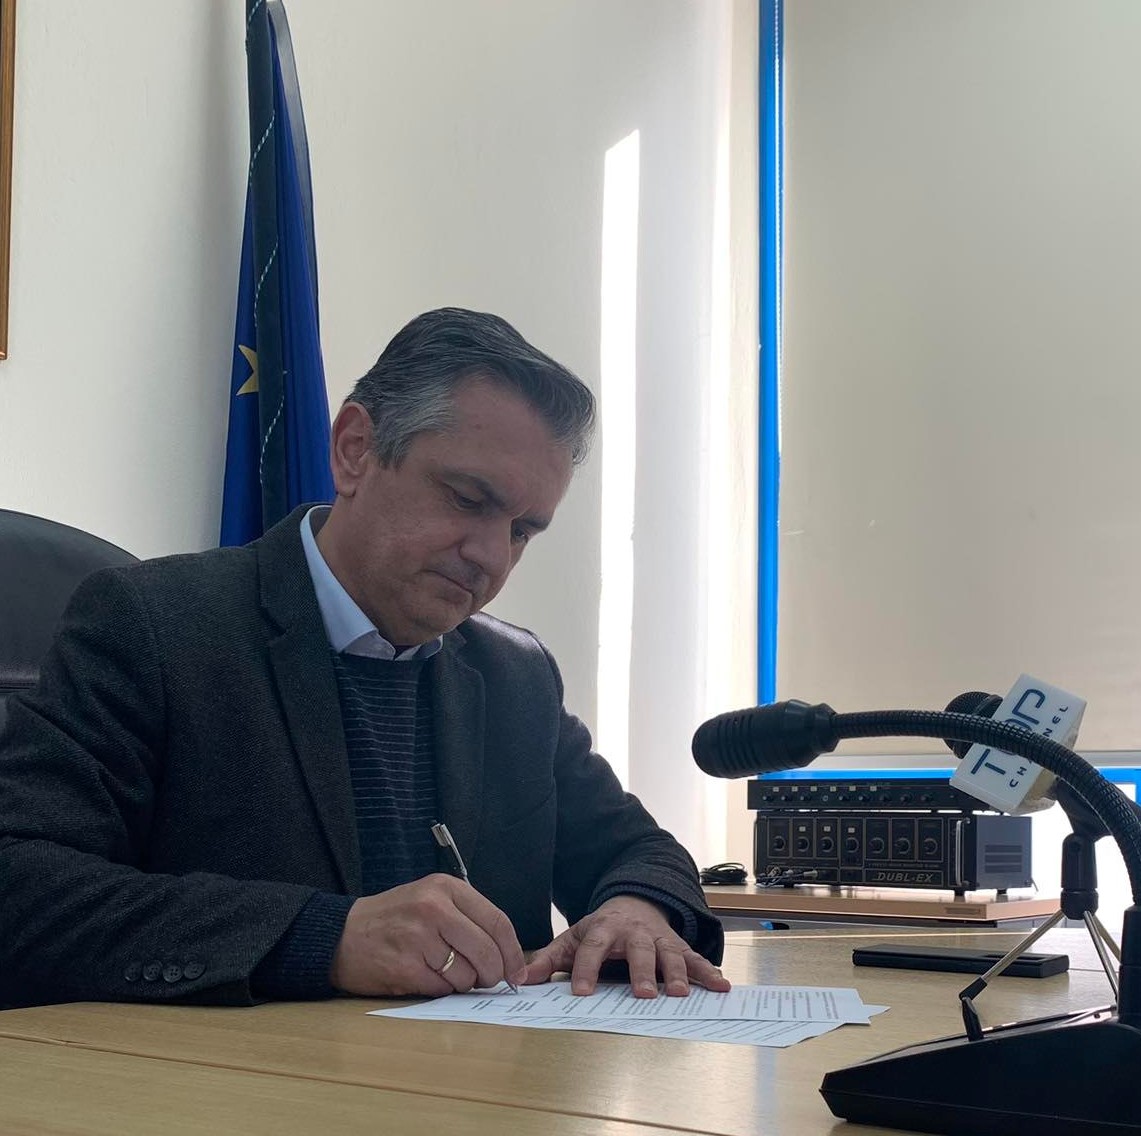 Υπογραφή σύμβασης για την εκτέλεση έργου: «Δομική Ενίσχυση και Αποκατάσταση Ακραίων Σπονδύλων Μ6.2 Υψηλής Γέφυρας Σερβίων»1